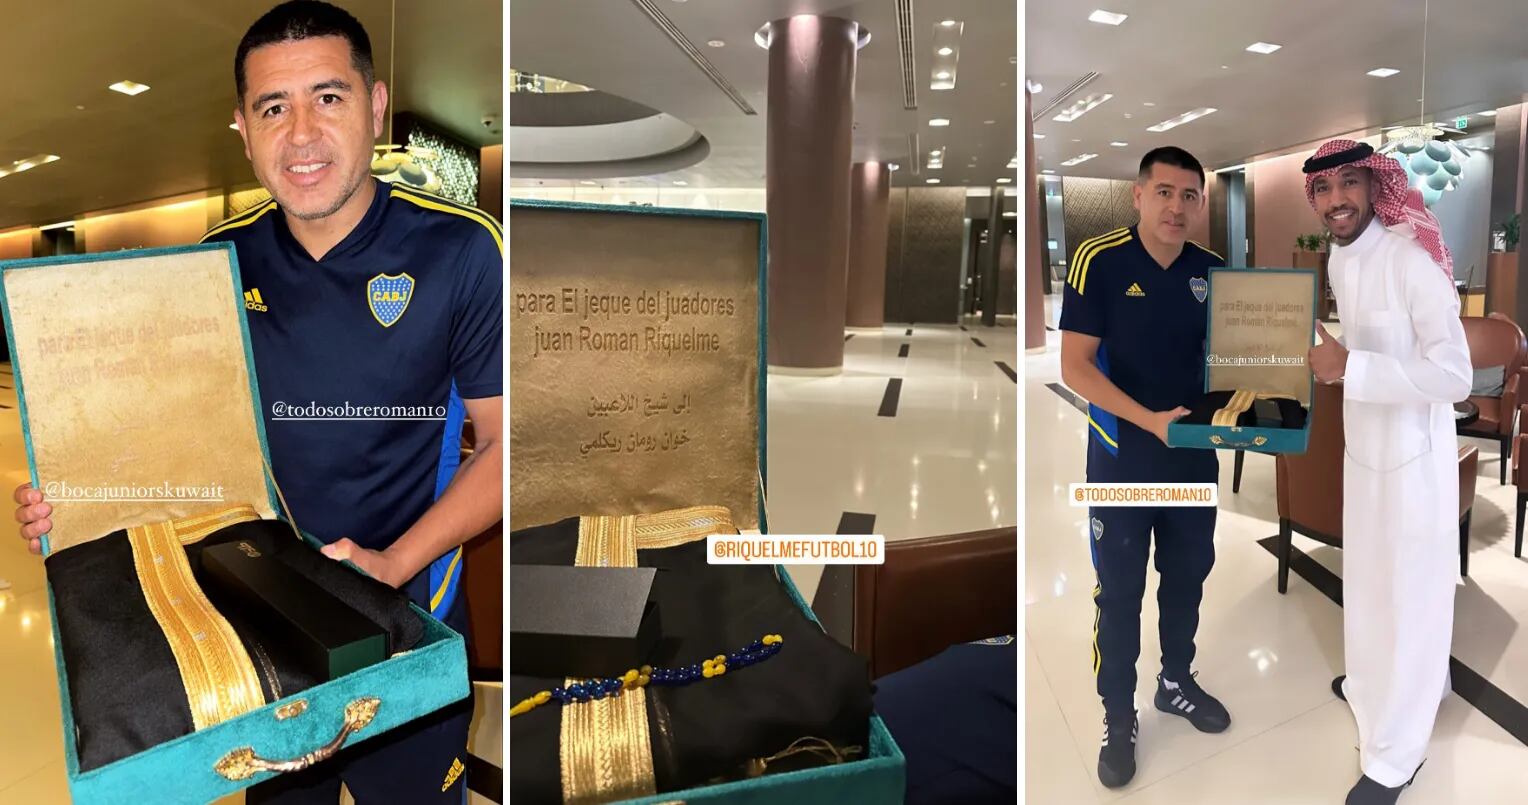 A Juan Román Riquelme le regalaron la túnica de Lionel Messi en Abu Dhabi, pero un error arruinó todo: “Jeque”